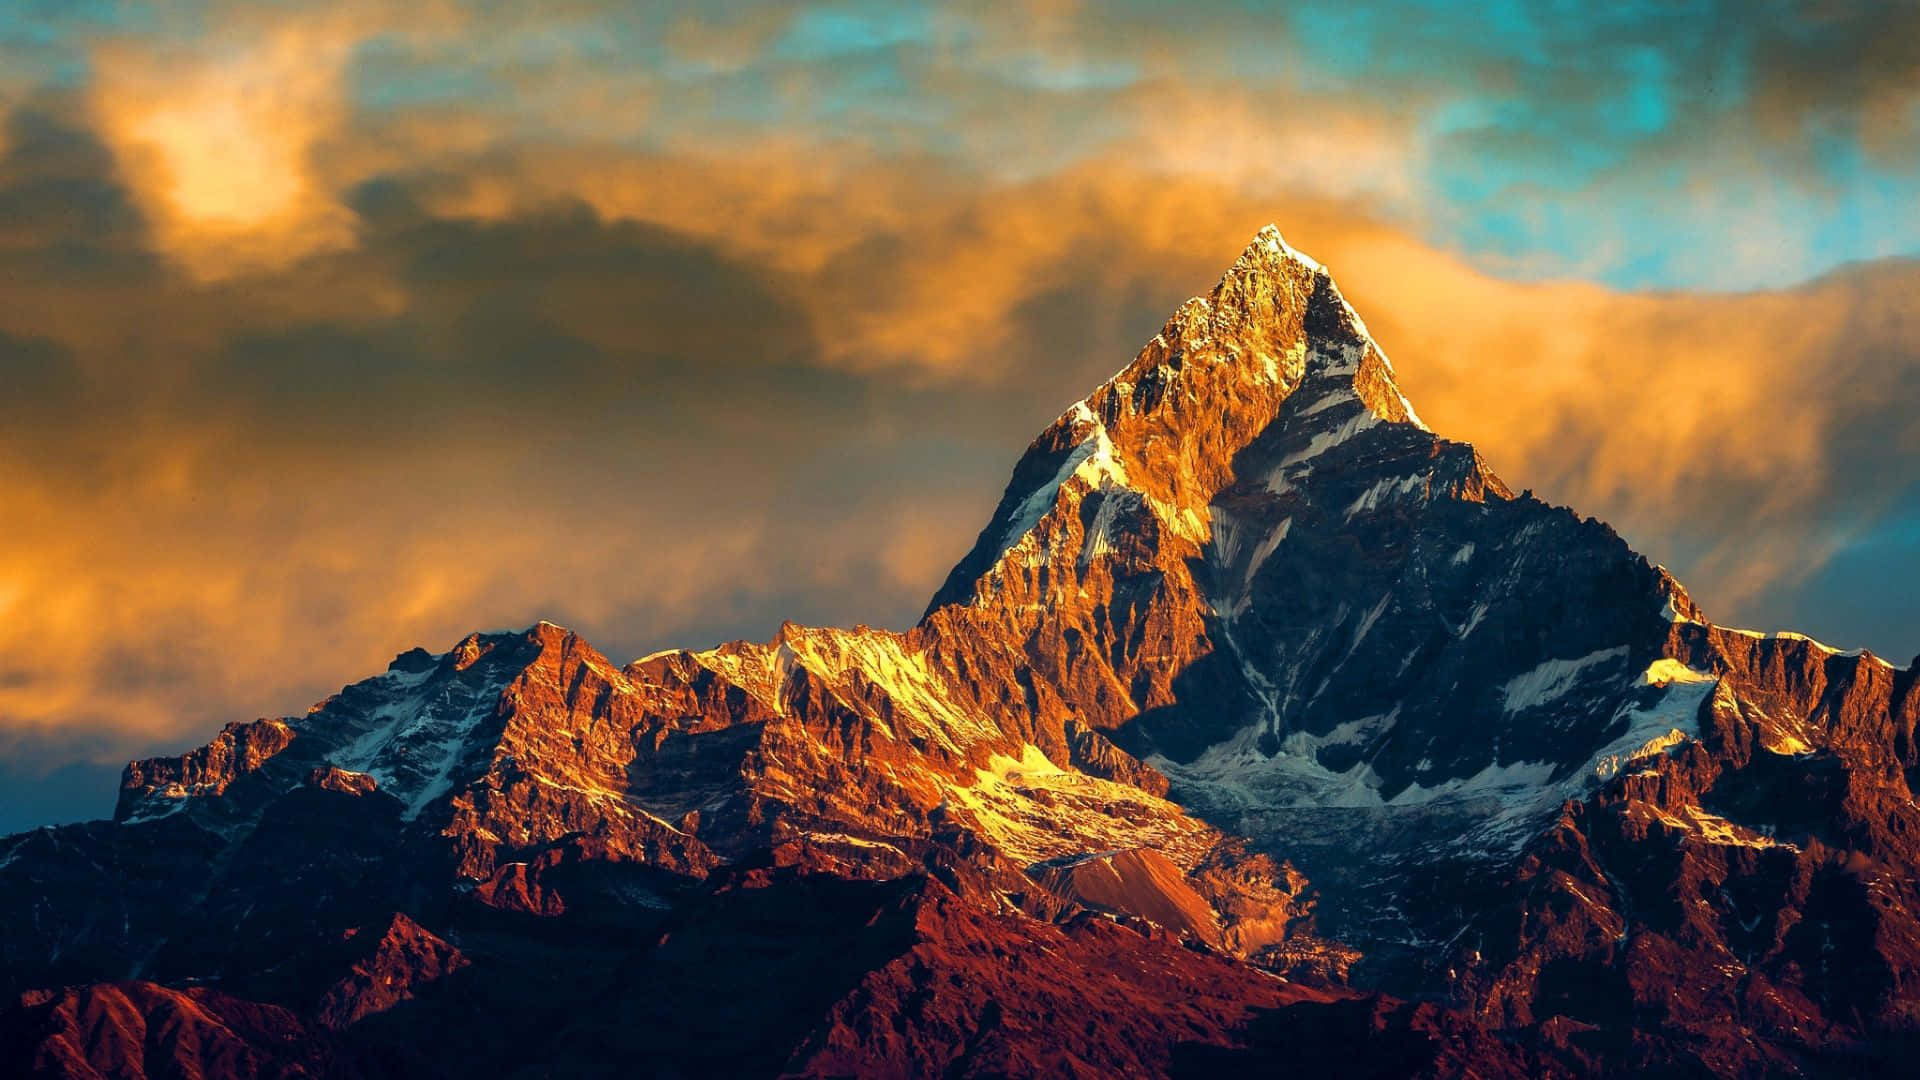 Impresionantepaisaje Del Monte Everest, La Montaña Más Alta Del Himalaya.